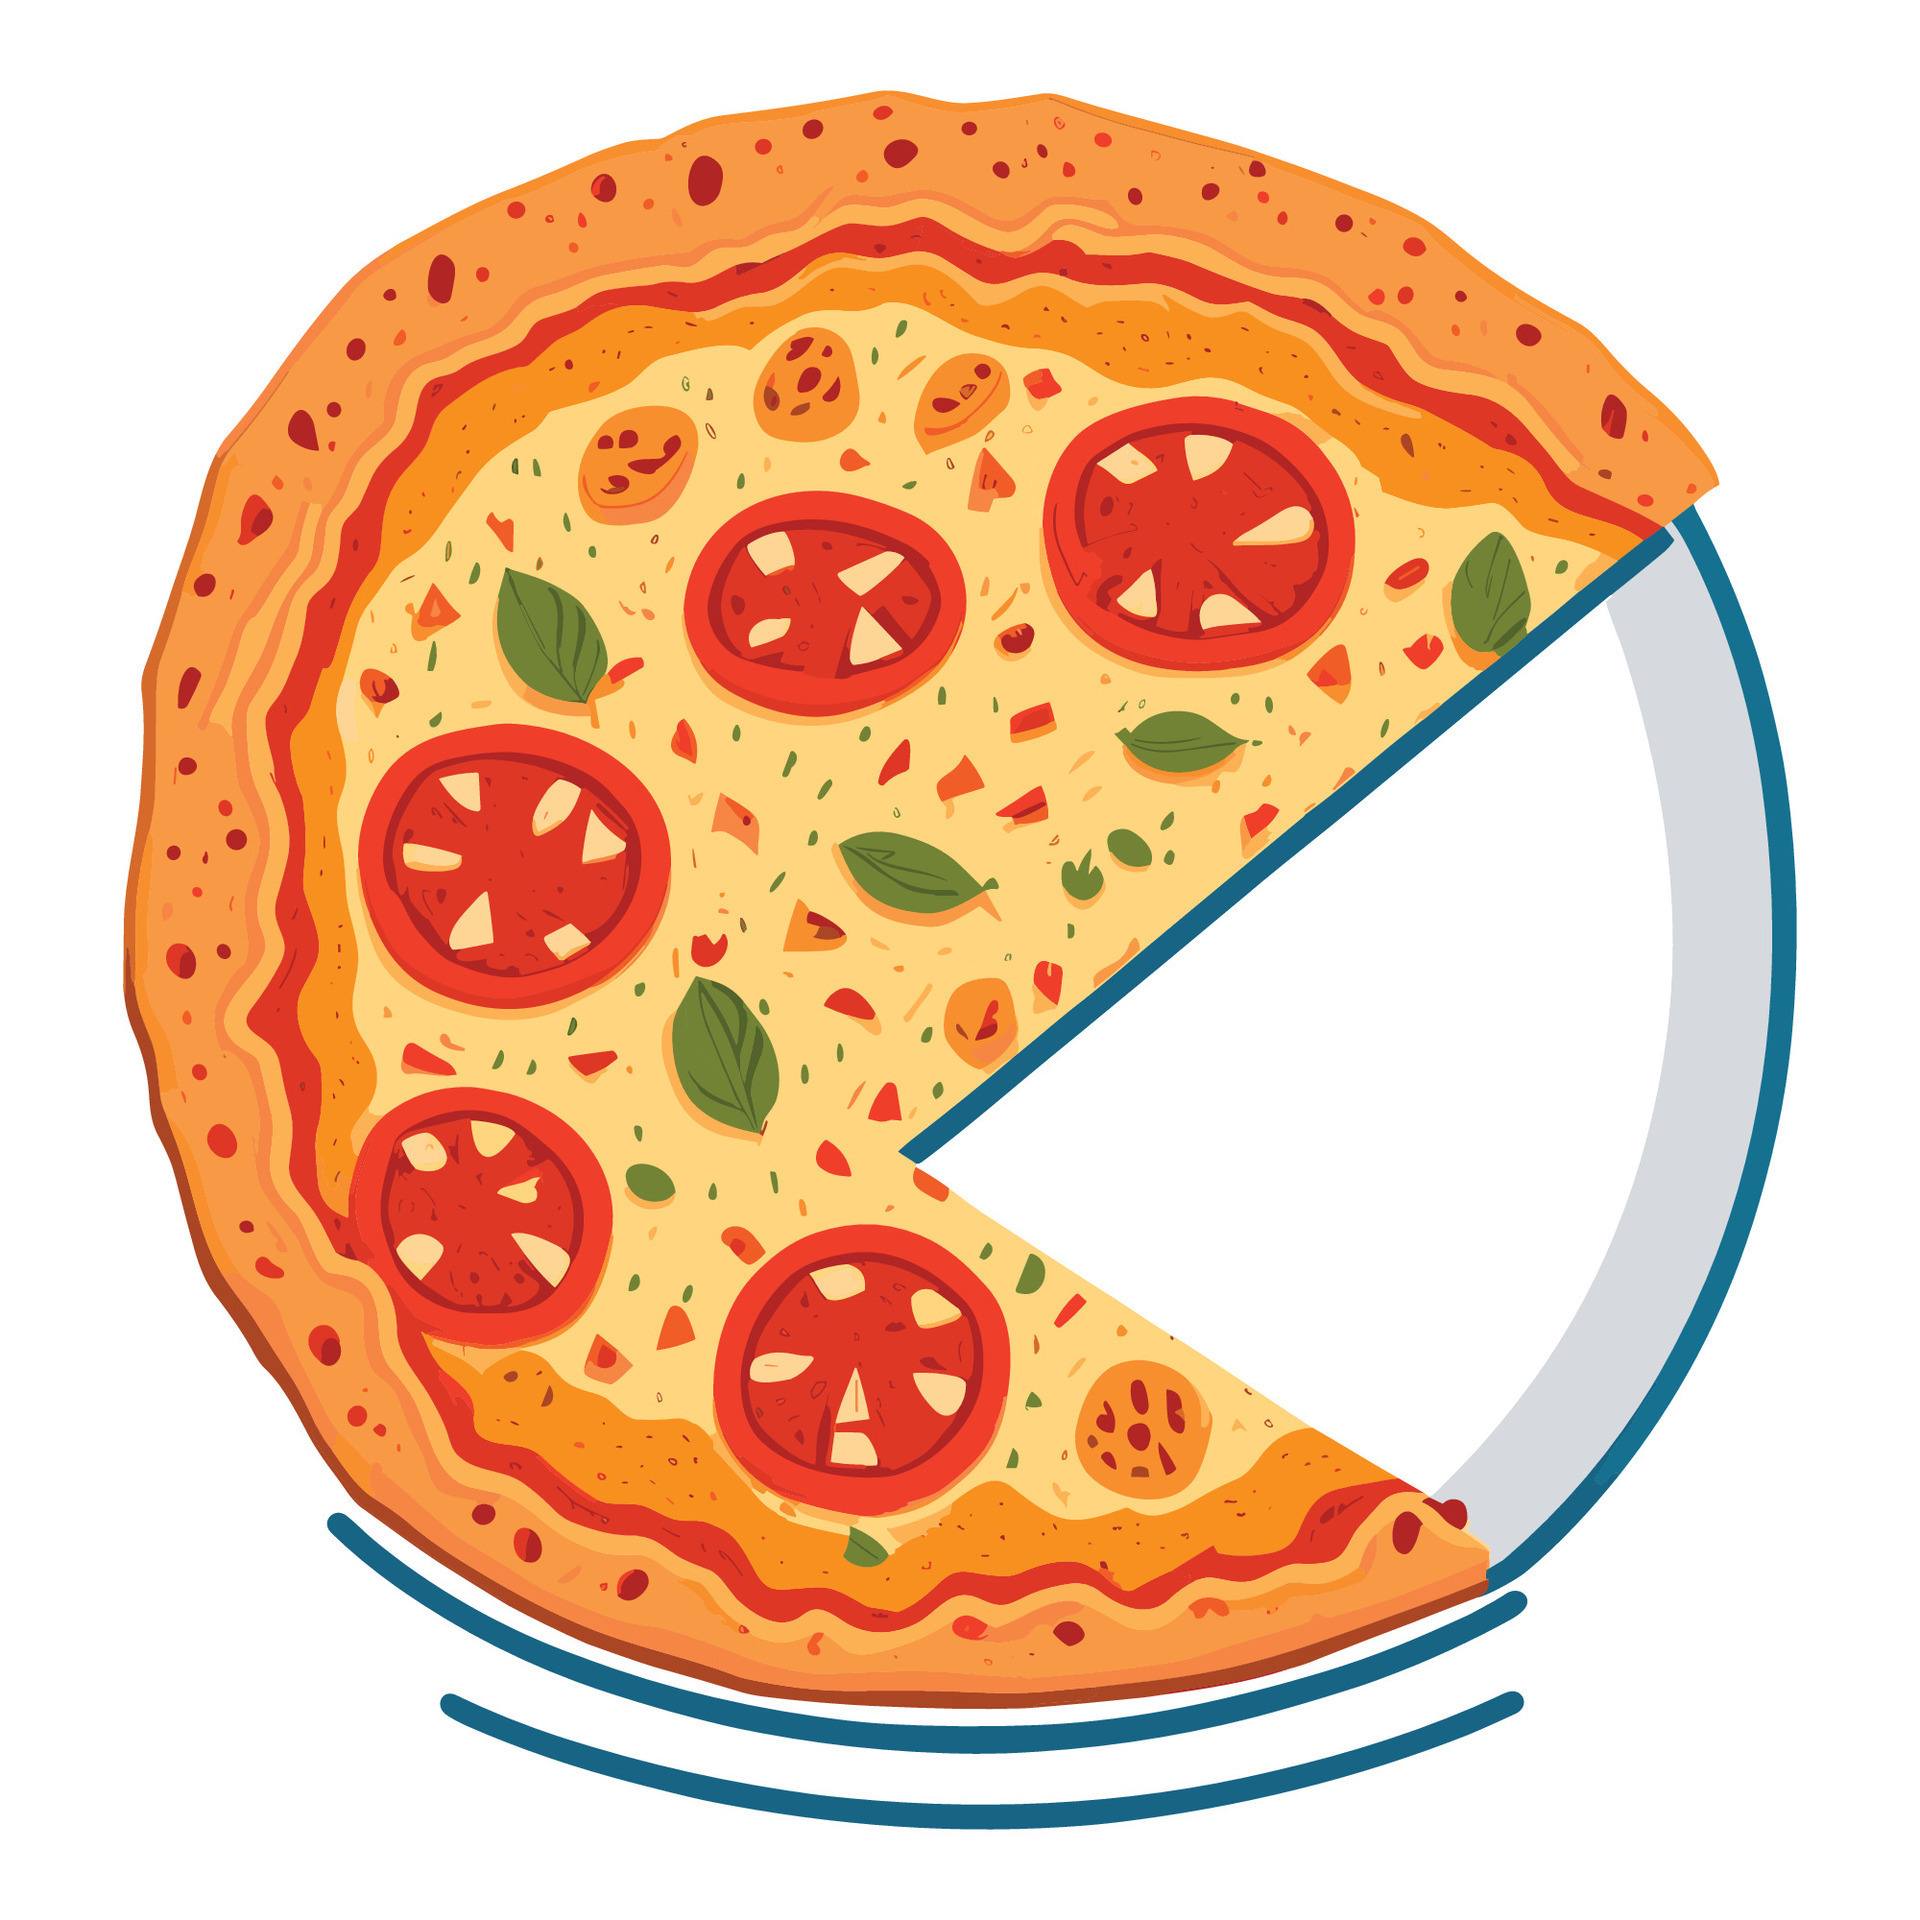 AOTISO Tranche de pizza de dessin animé avec des gouttes de